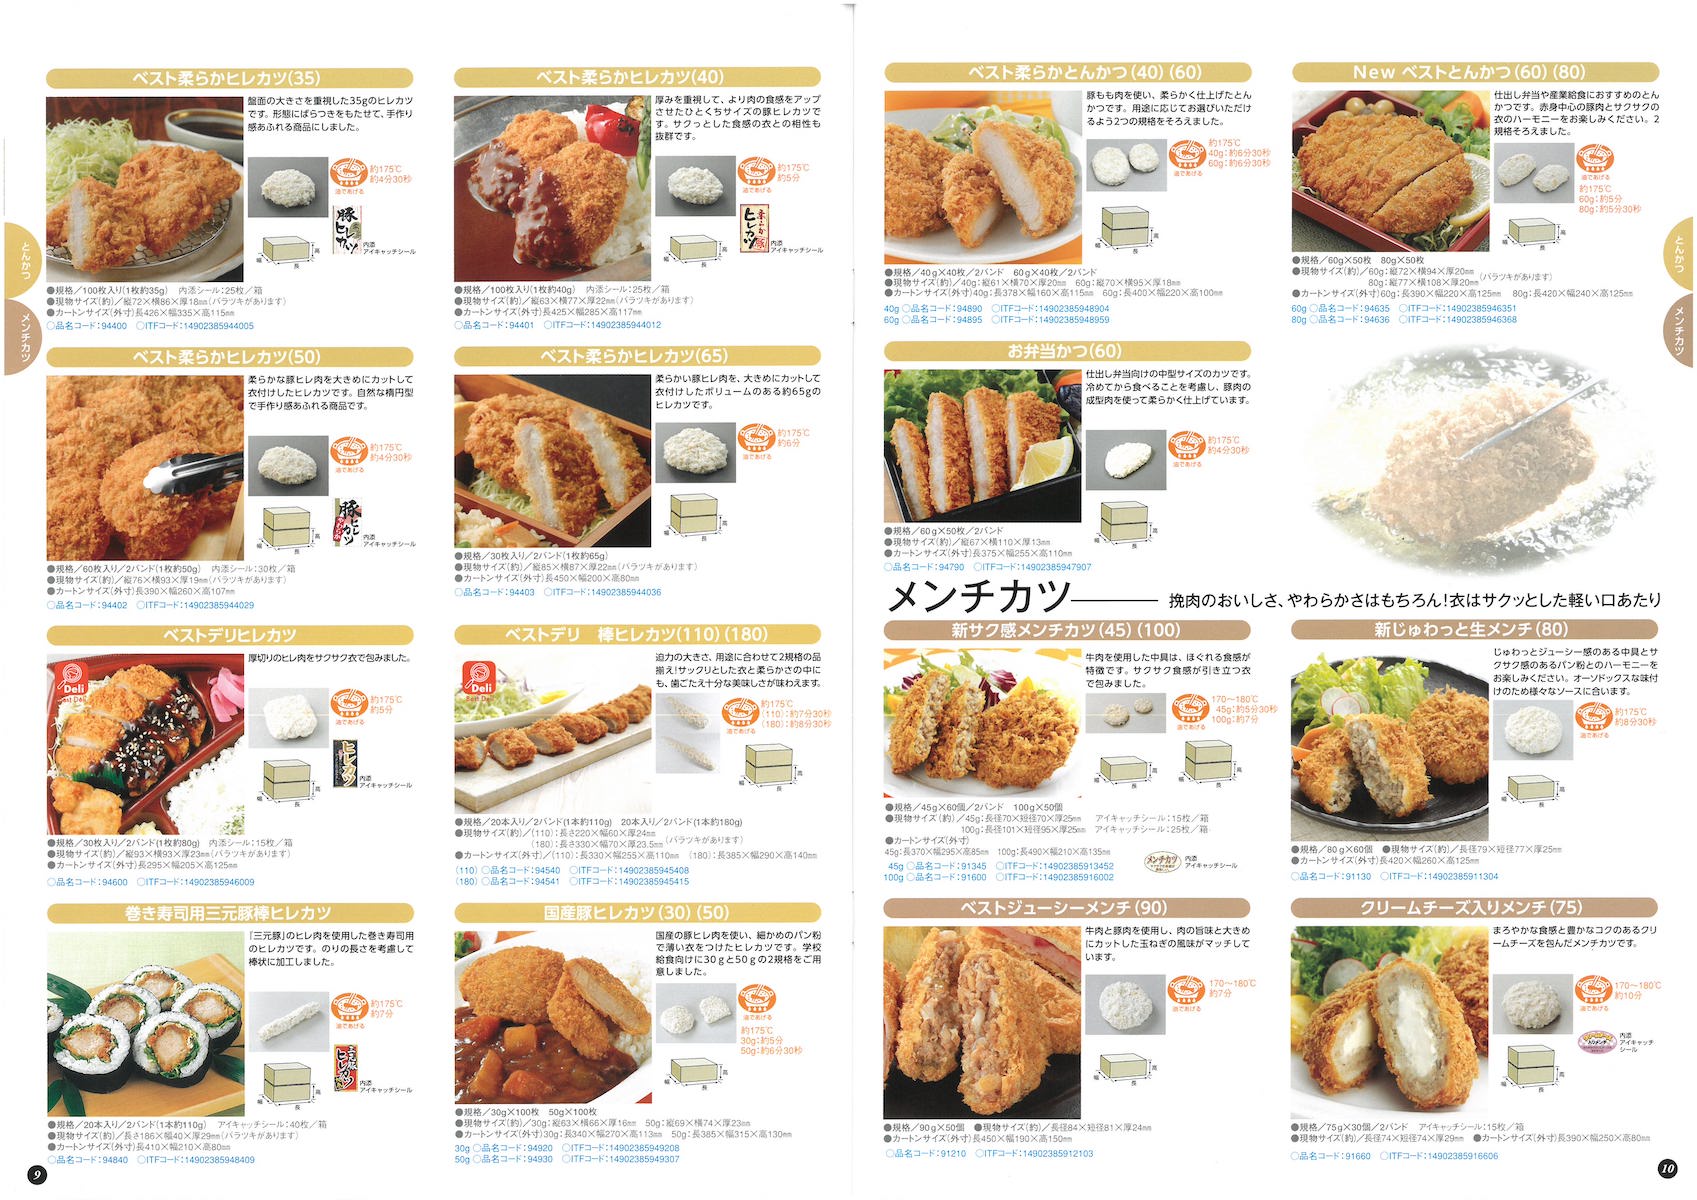 日東ベスト2019業務用食品総合カタログ Best Selection | 冷凍食品カタログ.com